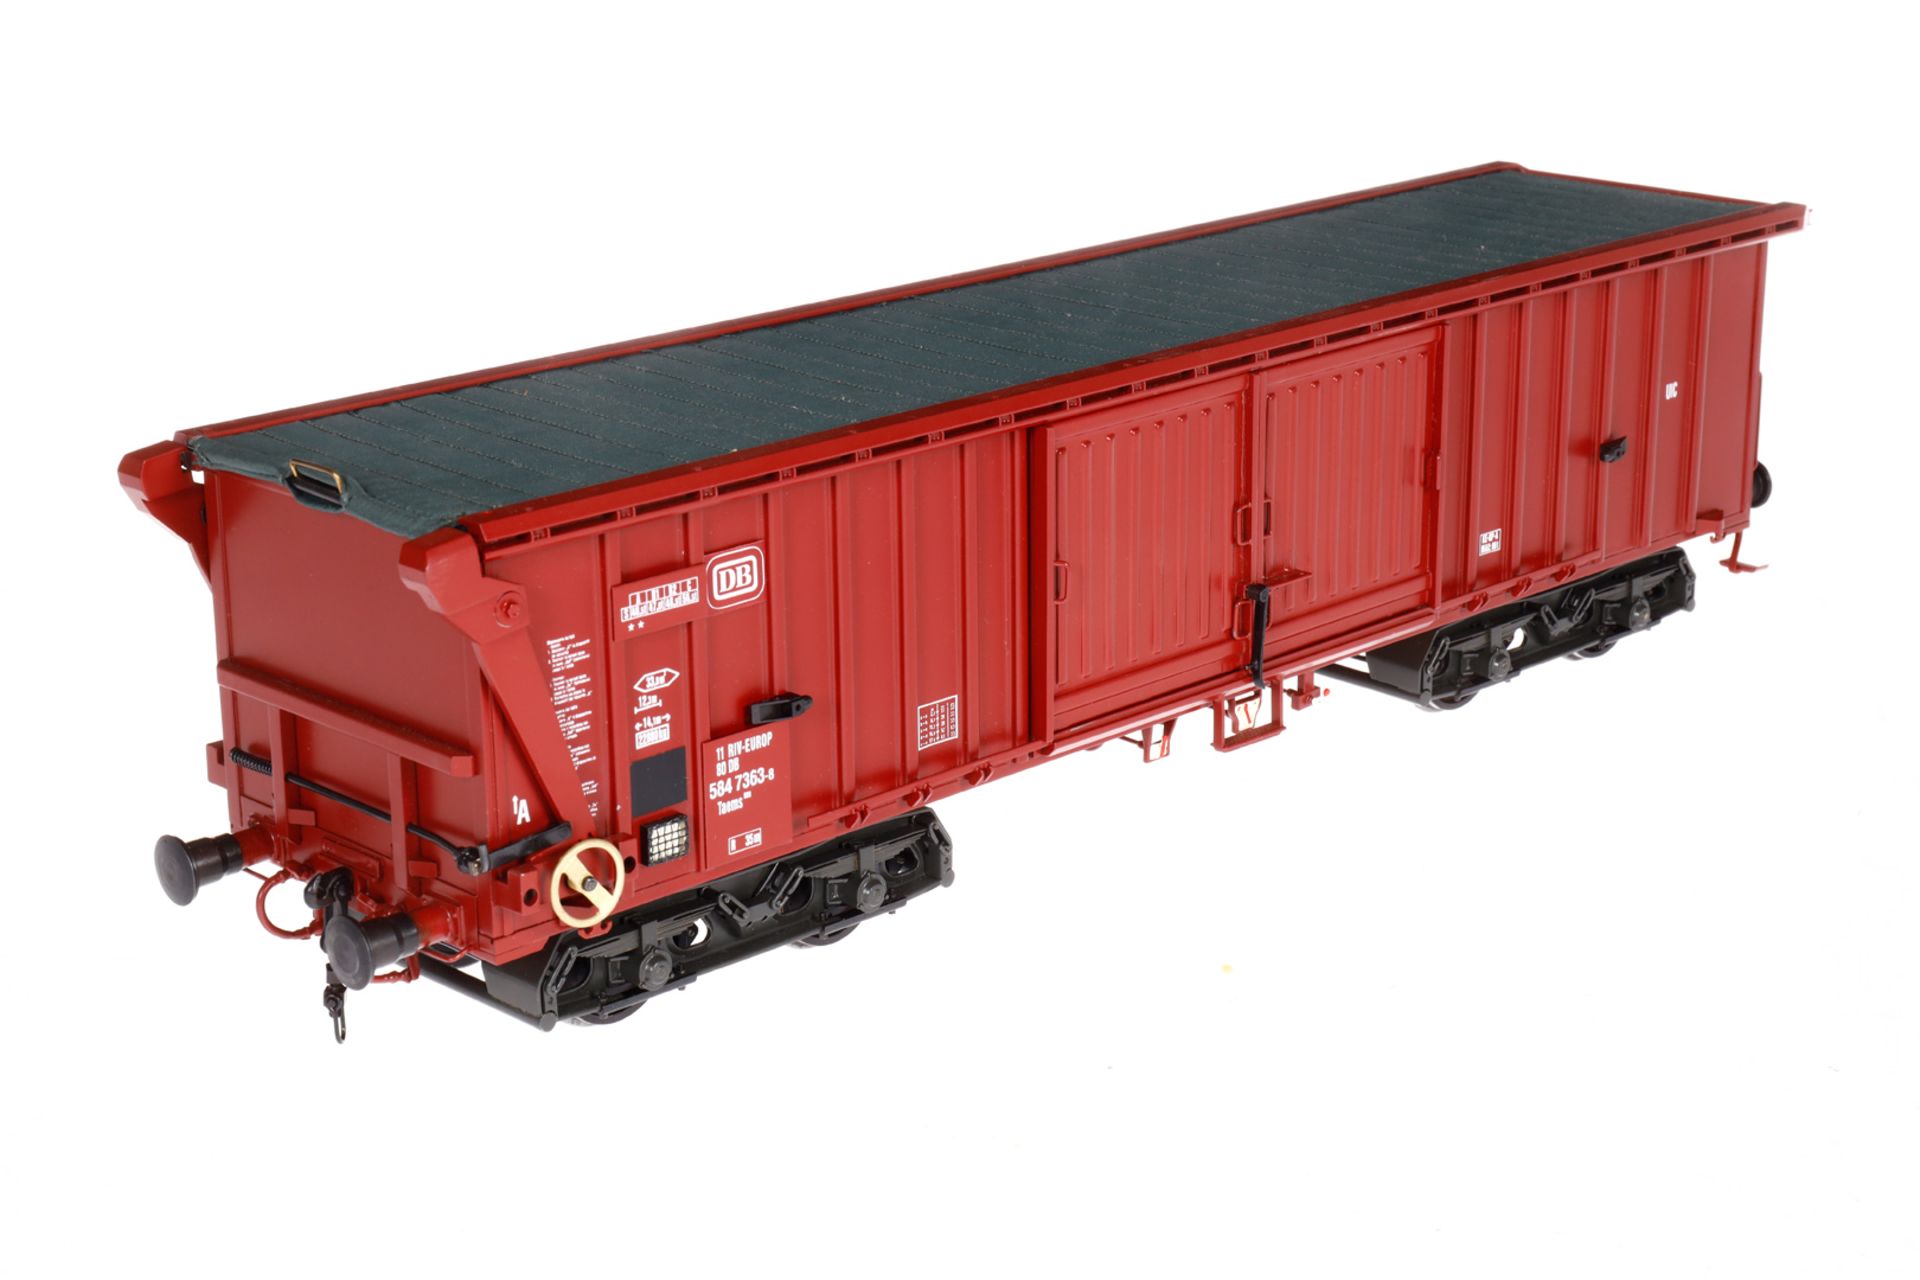 Bockholt Güterwagen ”584 7363-8”, Spur 1, rotbraun, LS und Alterungsspuren, L 44, im Karton, Z 1-2 - Image 3 of 5